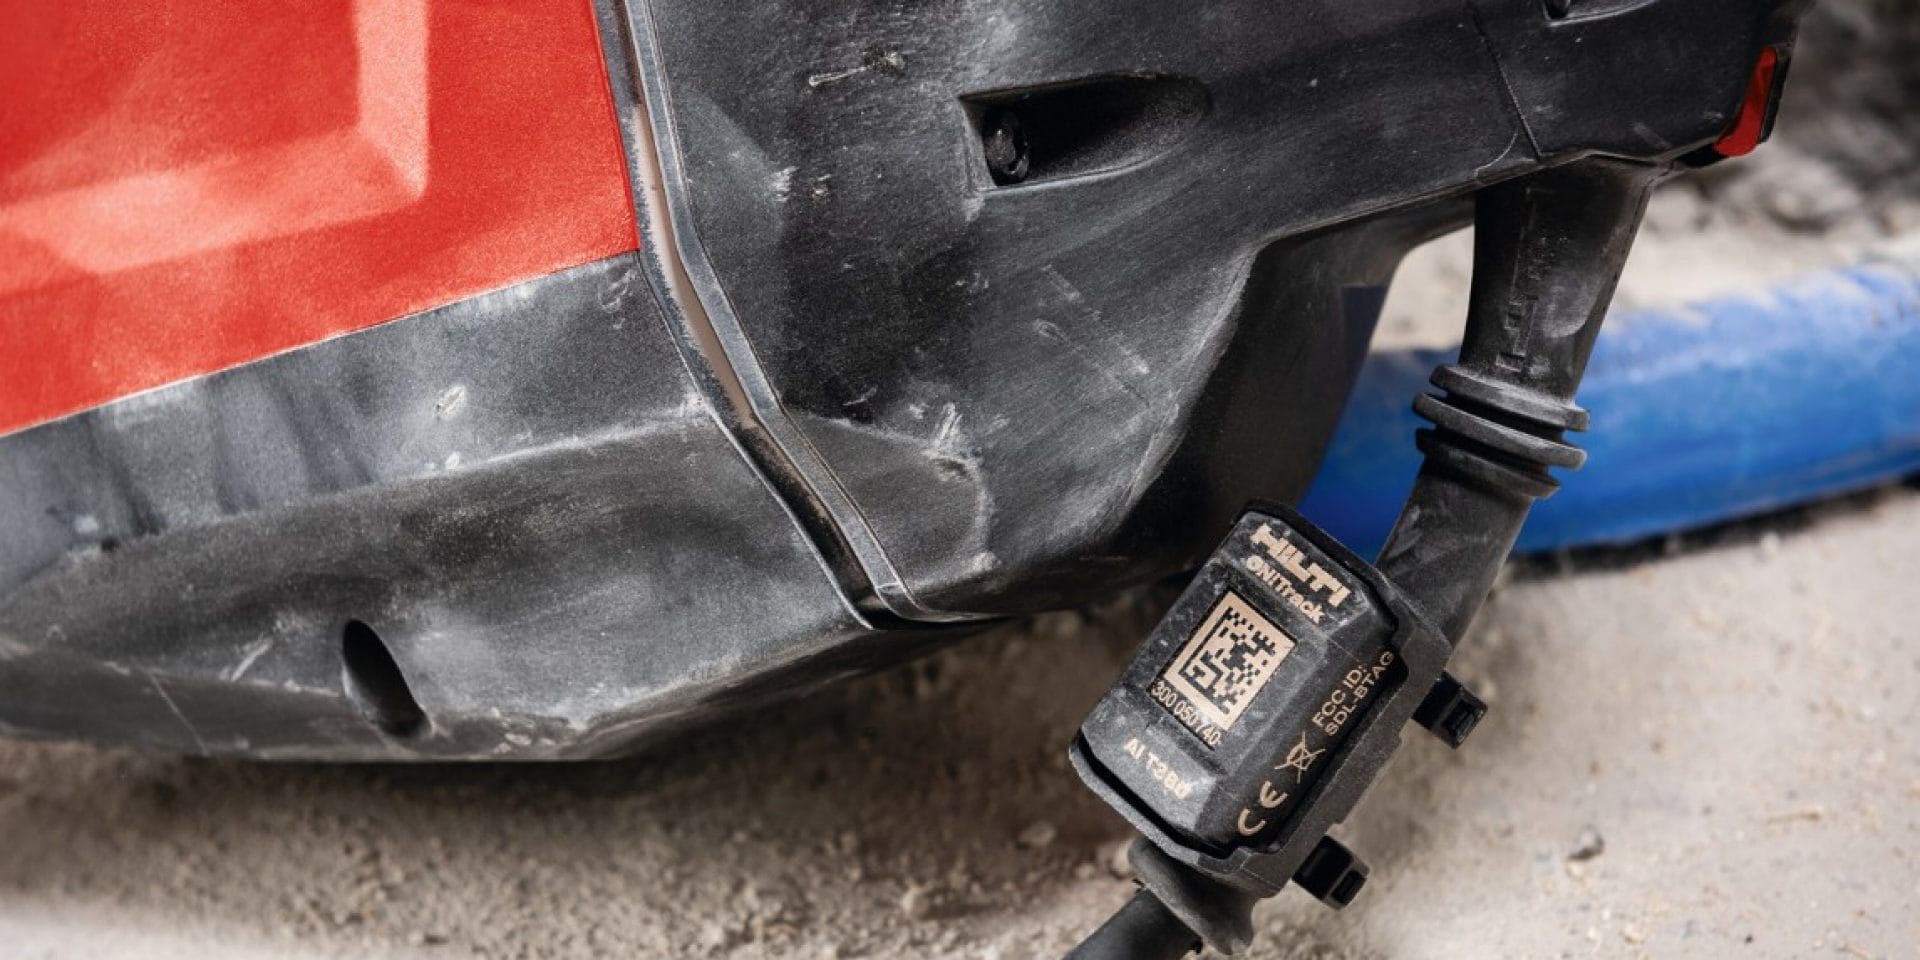 De robuuste ON!Track tags zijn ontworpen voor de zwaarste werfomstandigheden en bestand tegen corrosie, wrijving, mechanische impact en blootstelling aan chemicaliën.